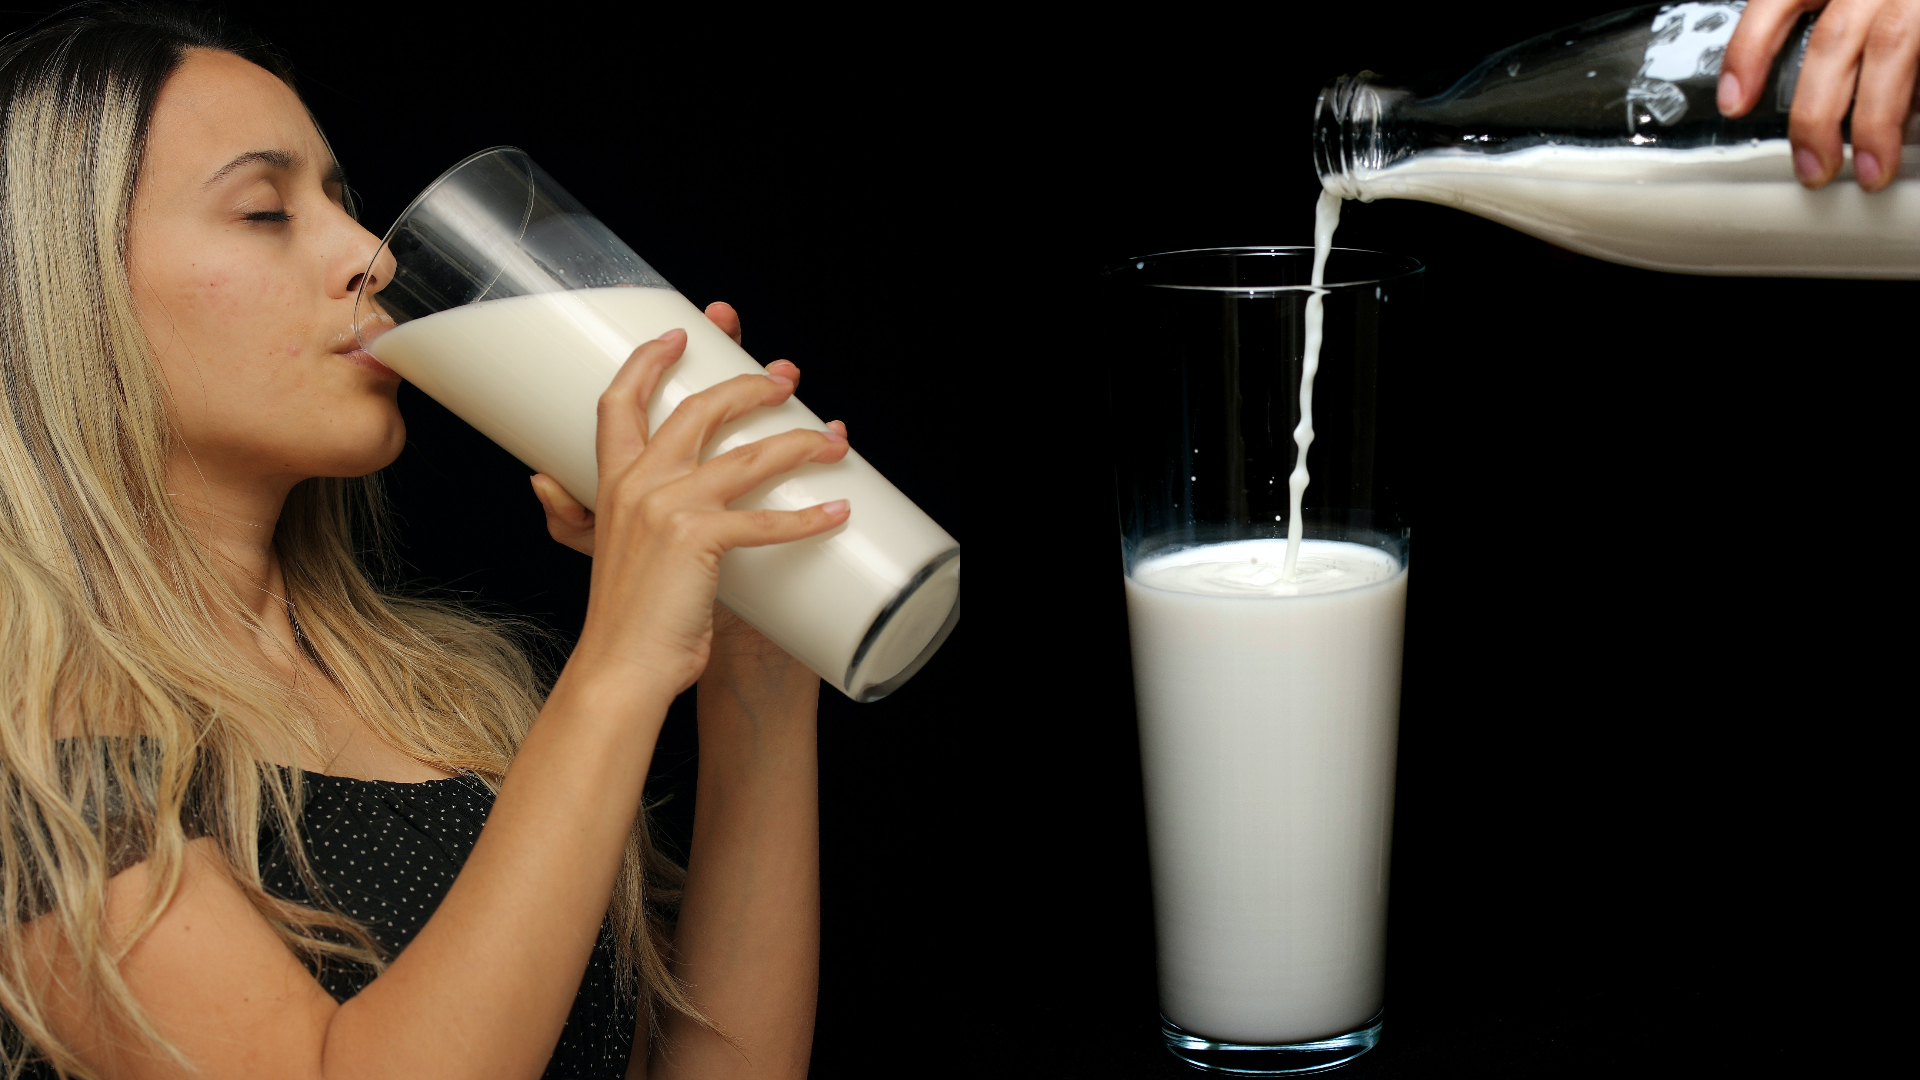 喝牛奶會變胖、會三高？來看研究怎麼說 -牛奶